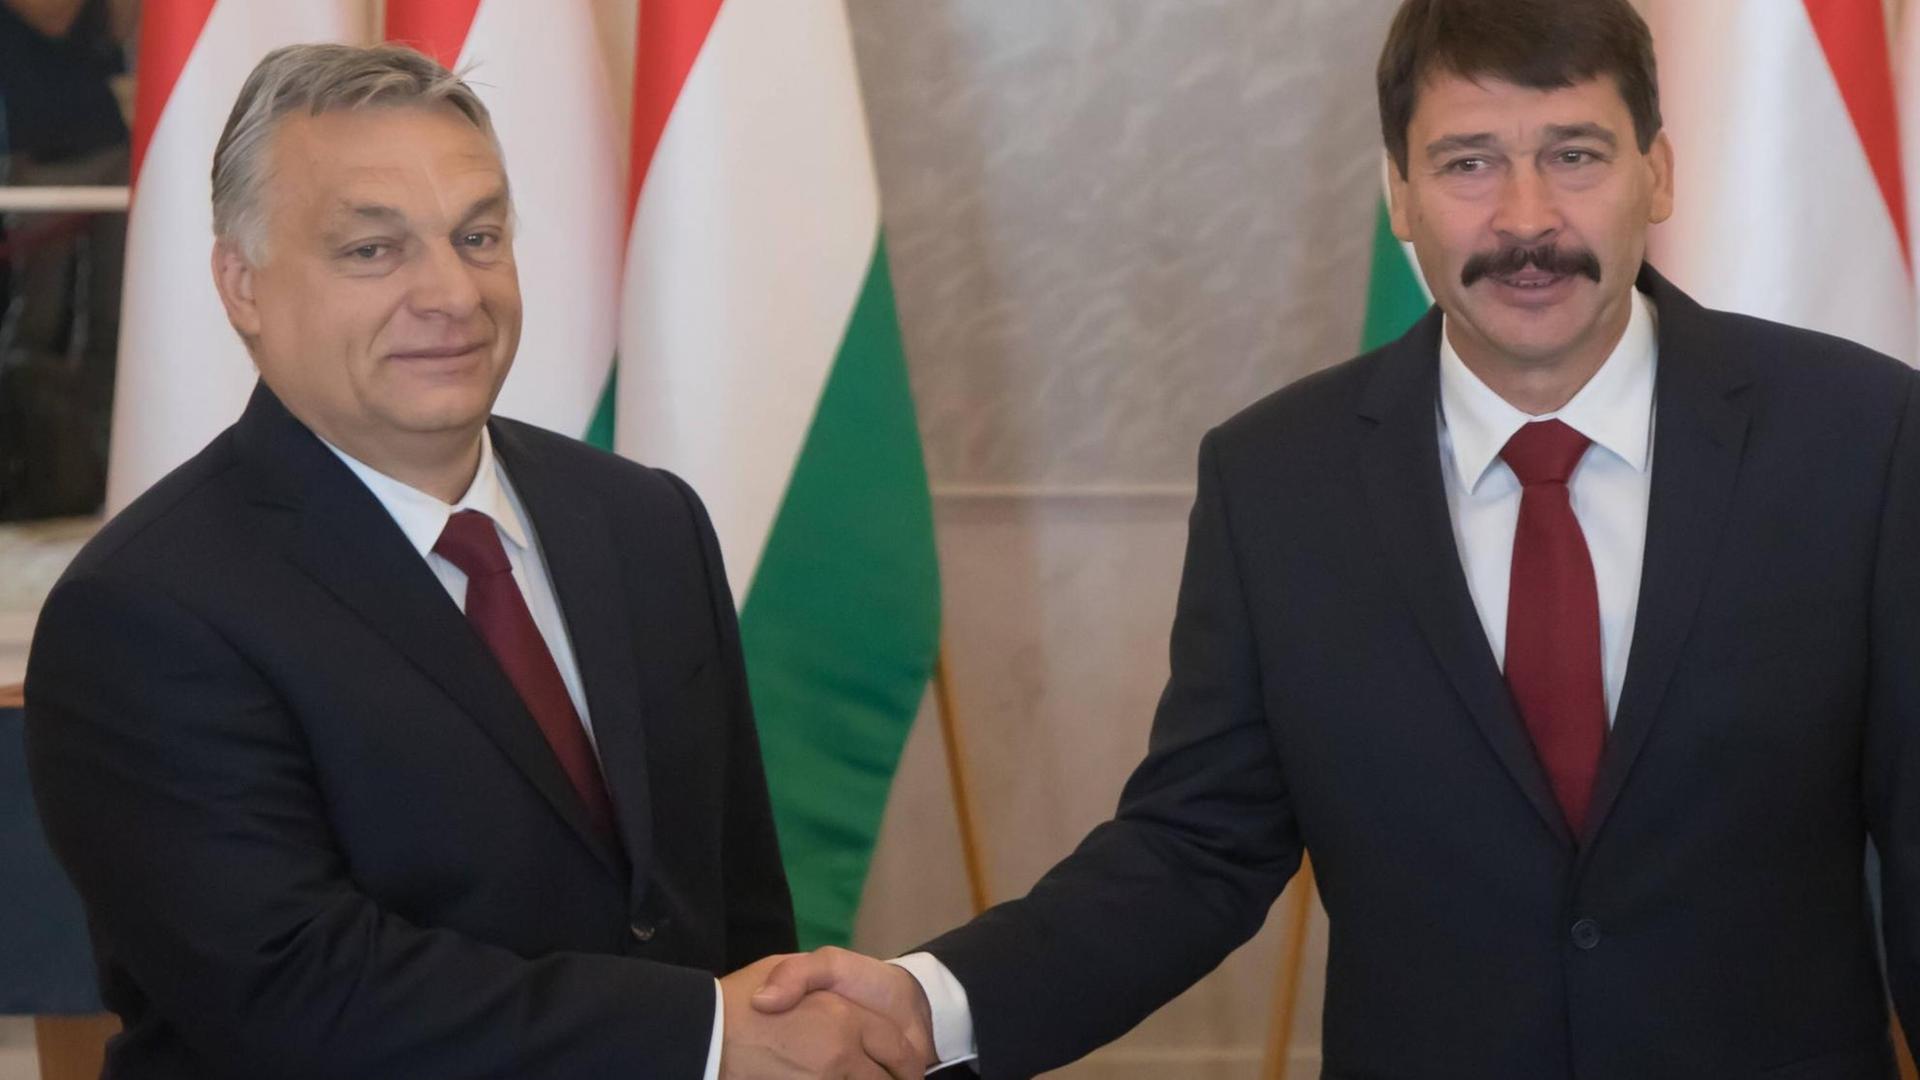 Shakehands zwischen Orban und Ader vor ungarischen Flaggen